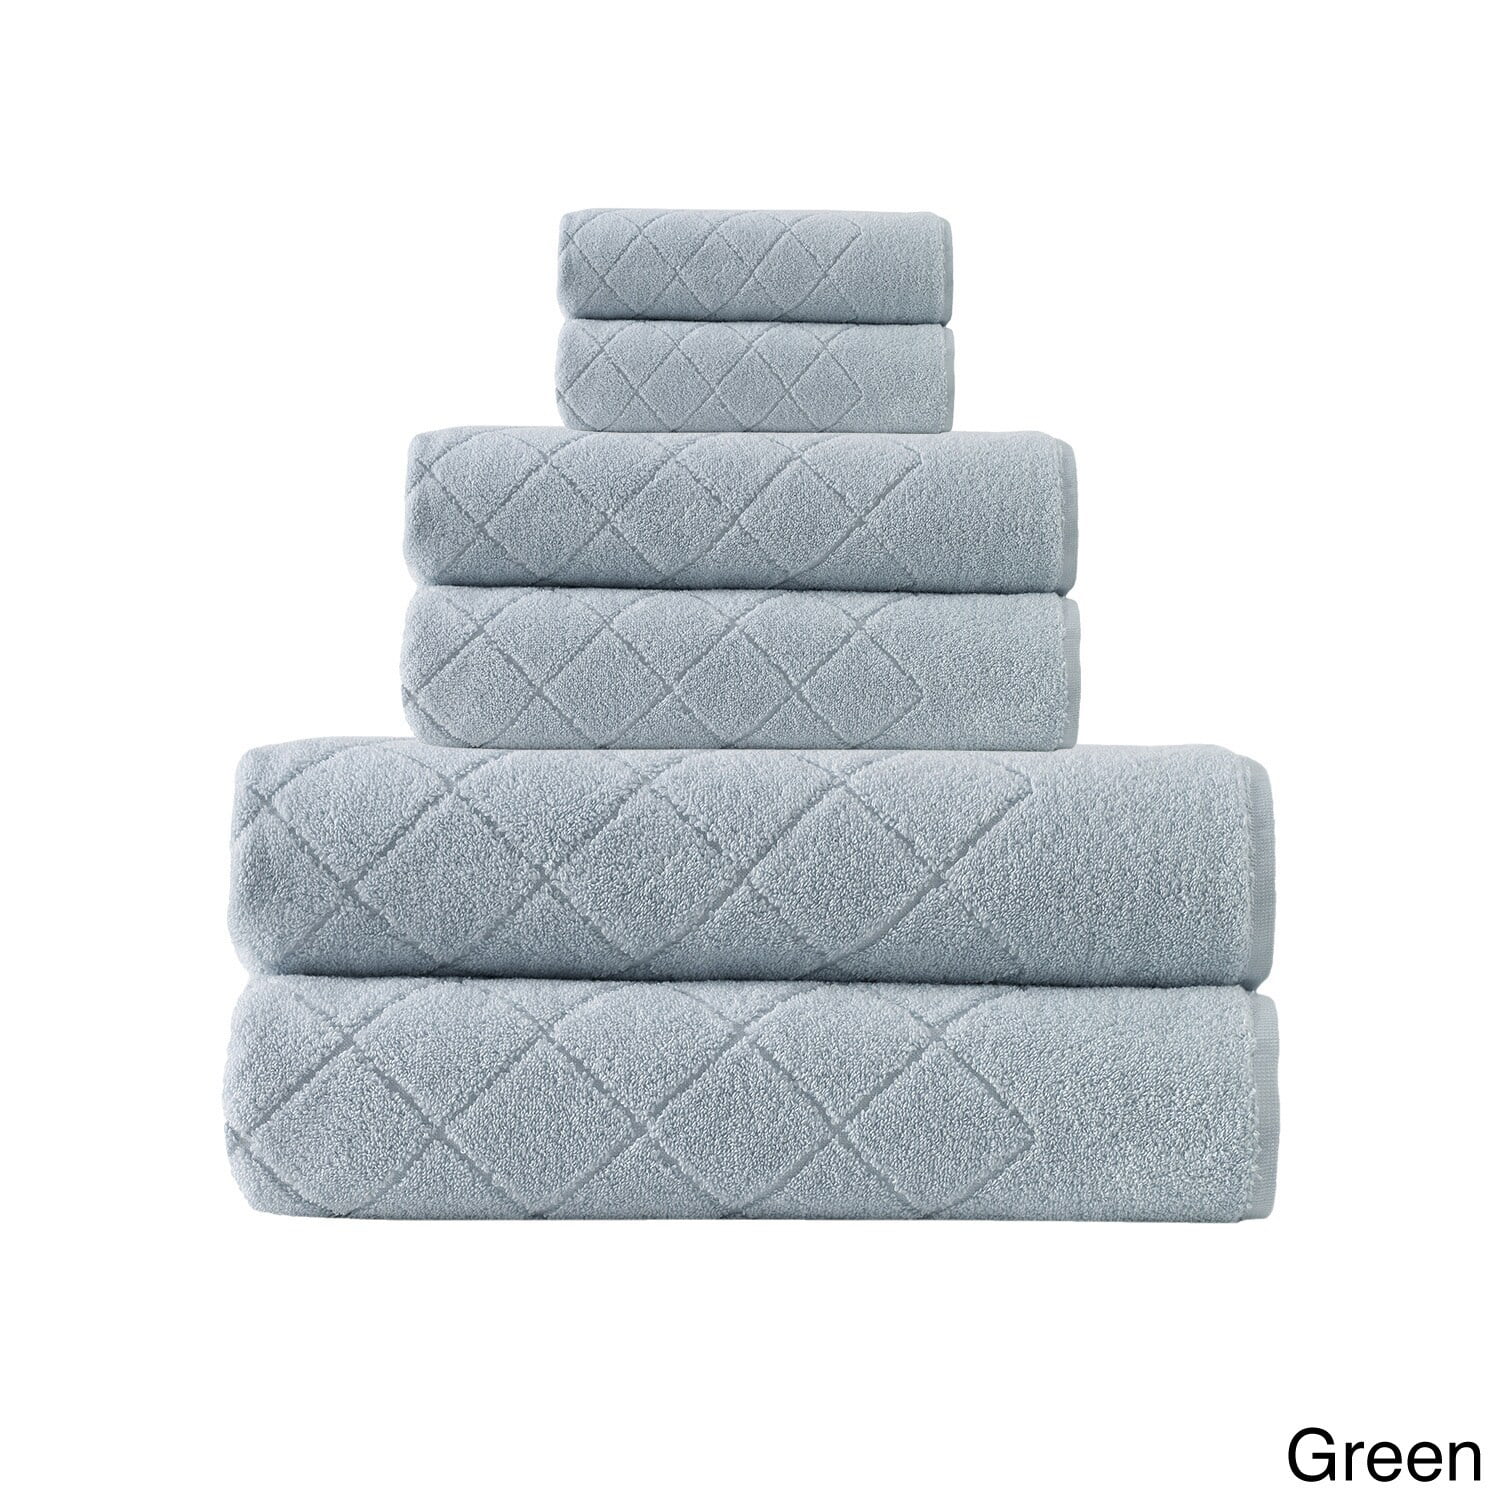 Enchante Home Gracious Towel Set (Set of 6) - Walmart.com